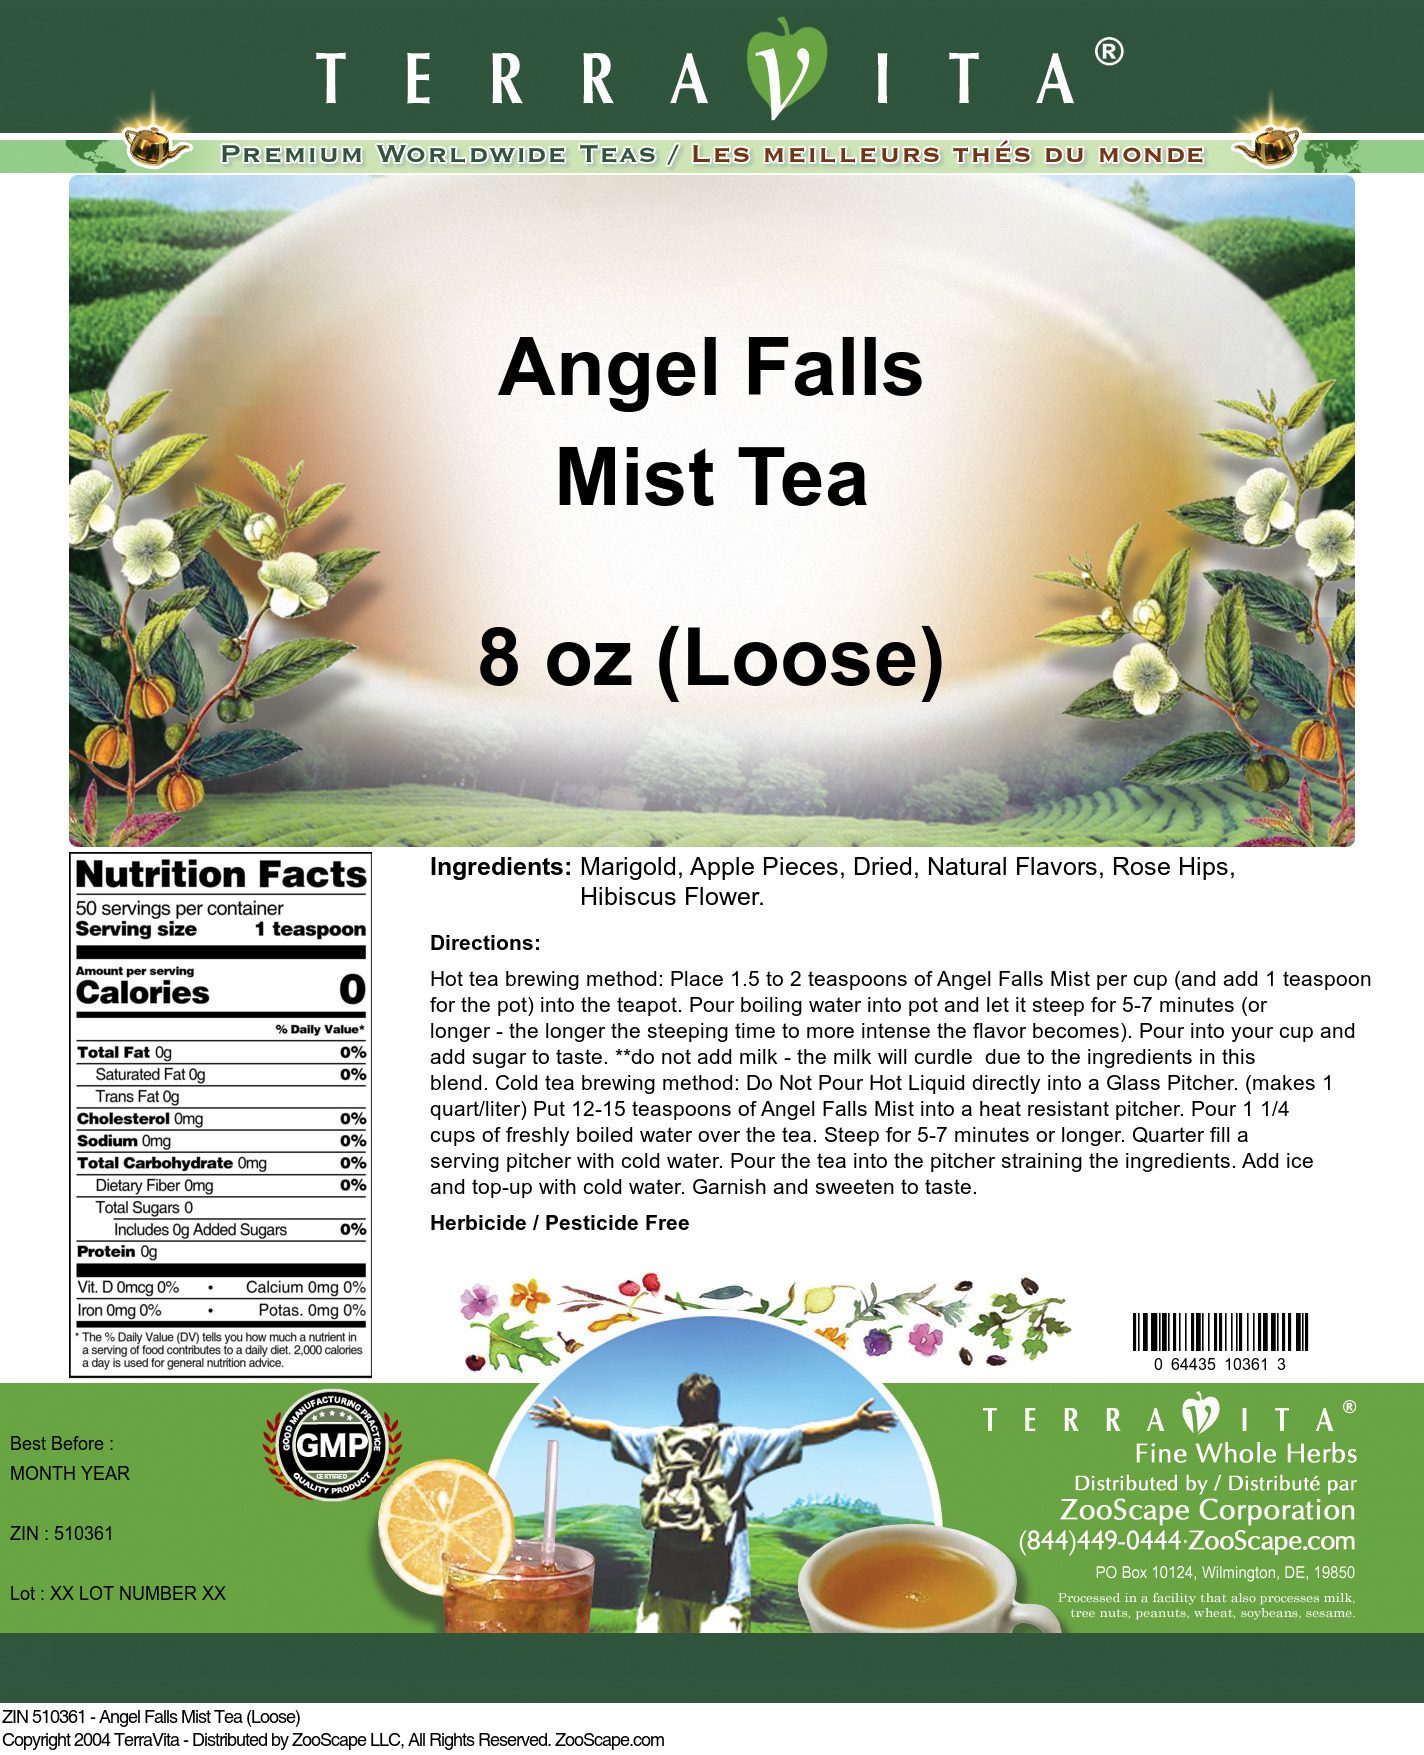 Angel Falls Mist Tea (Loose) - Label